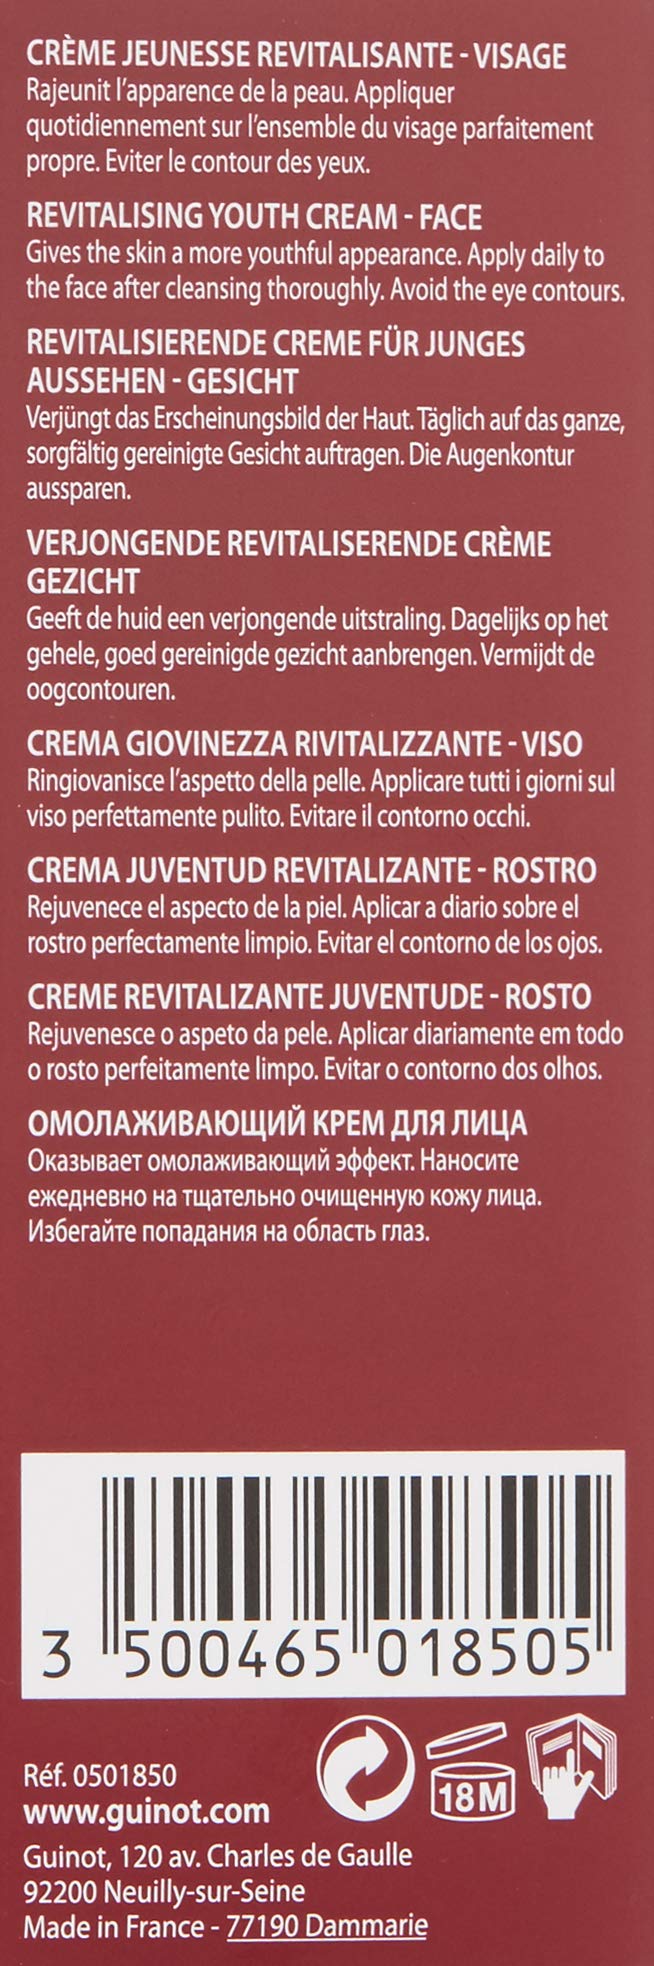 Guinot Longue Vie Cream, 1.7 oz